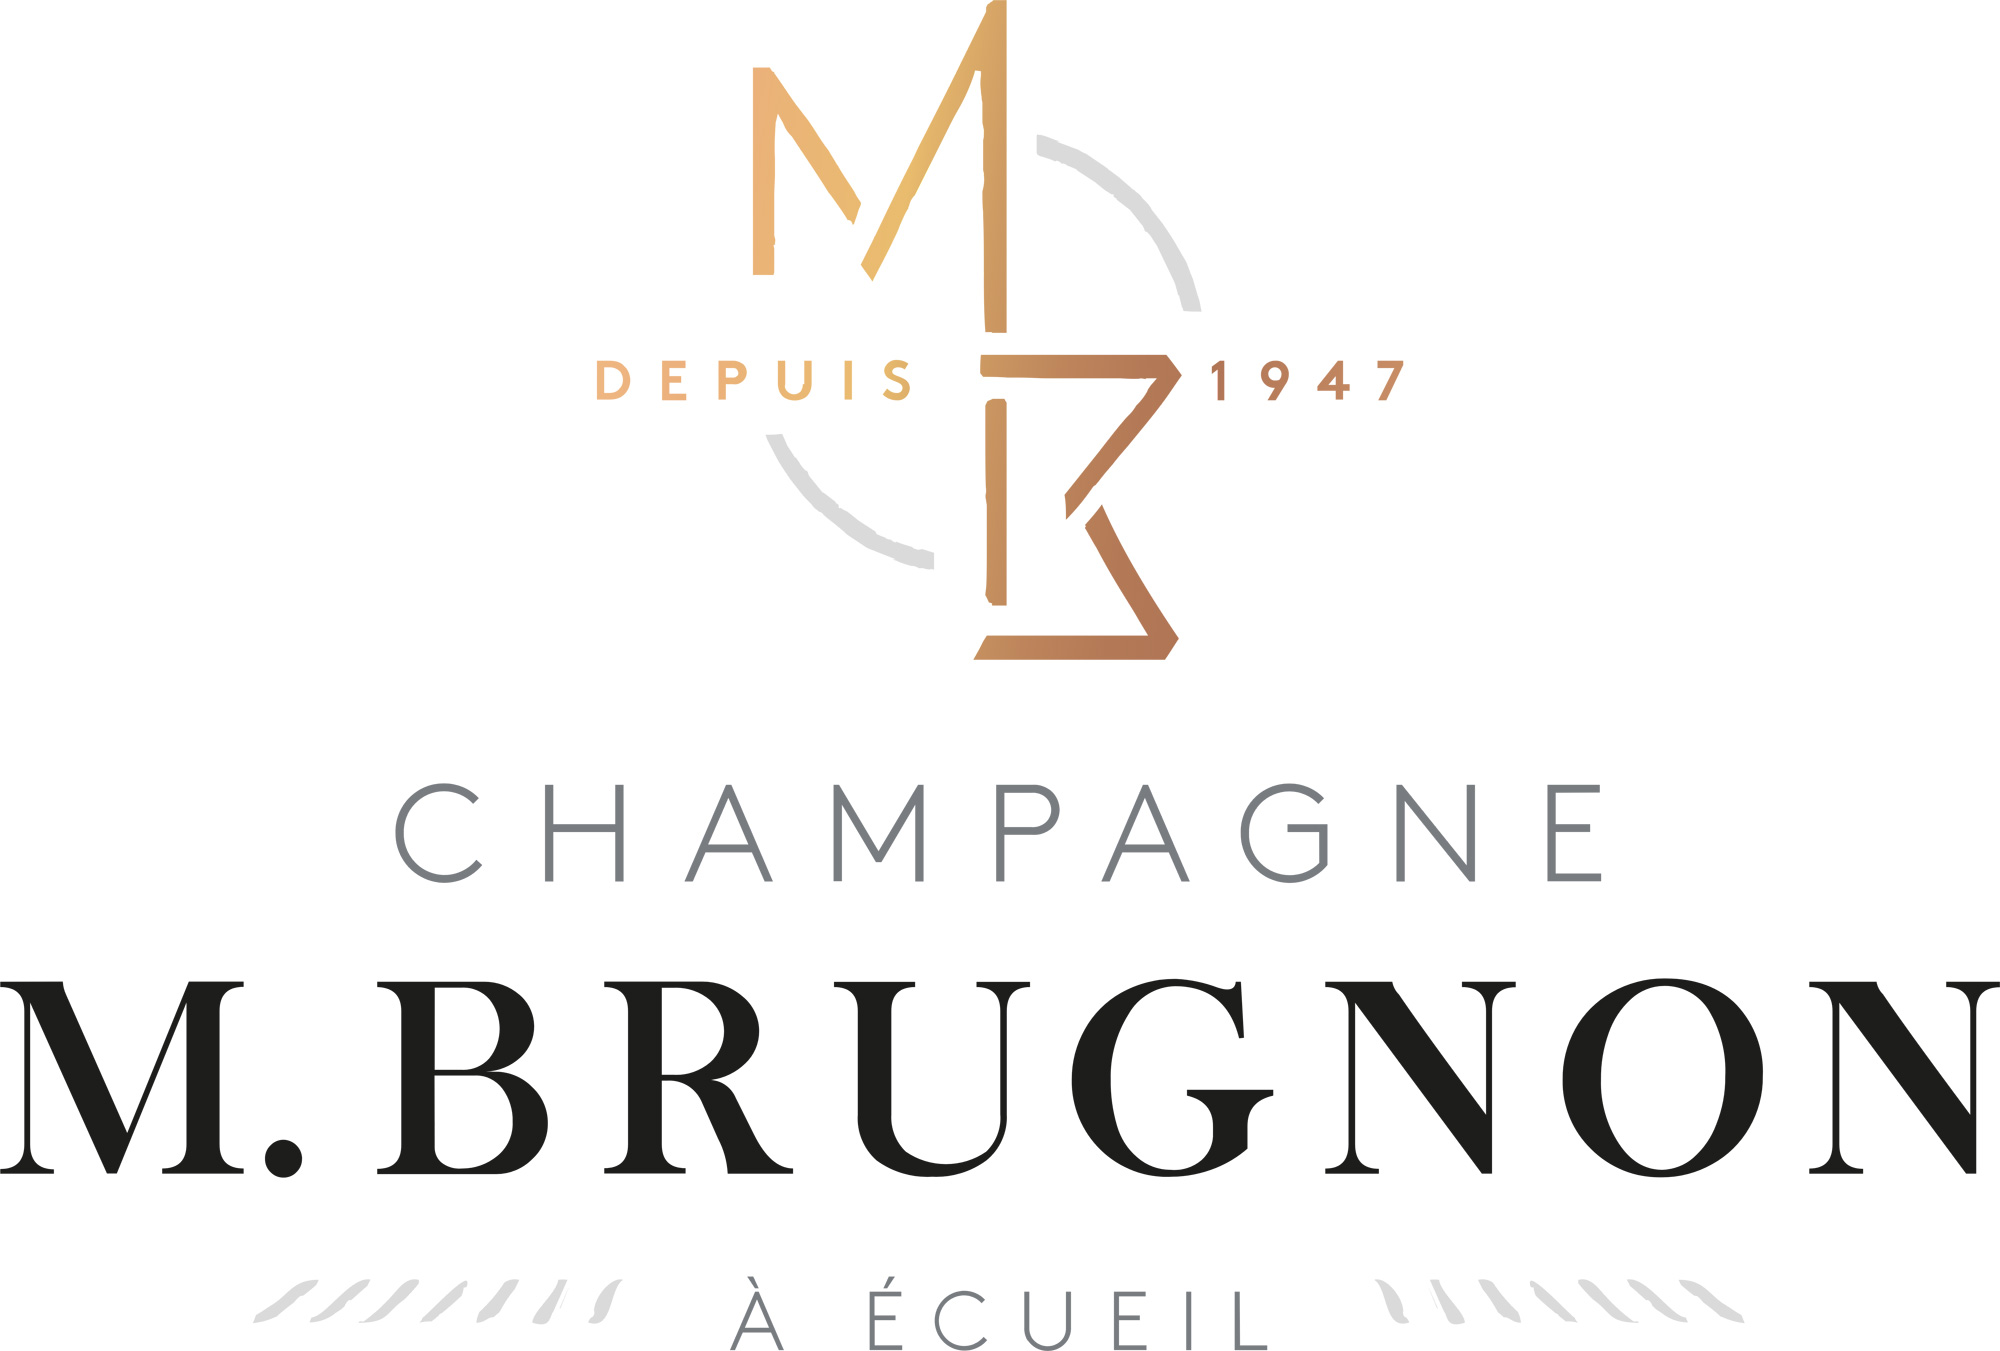 Champagne M. Brugnon